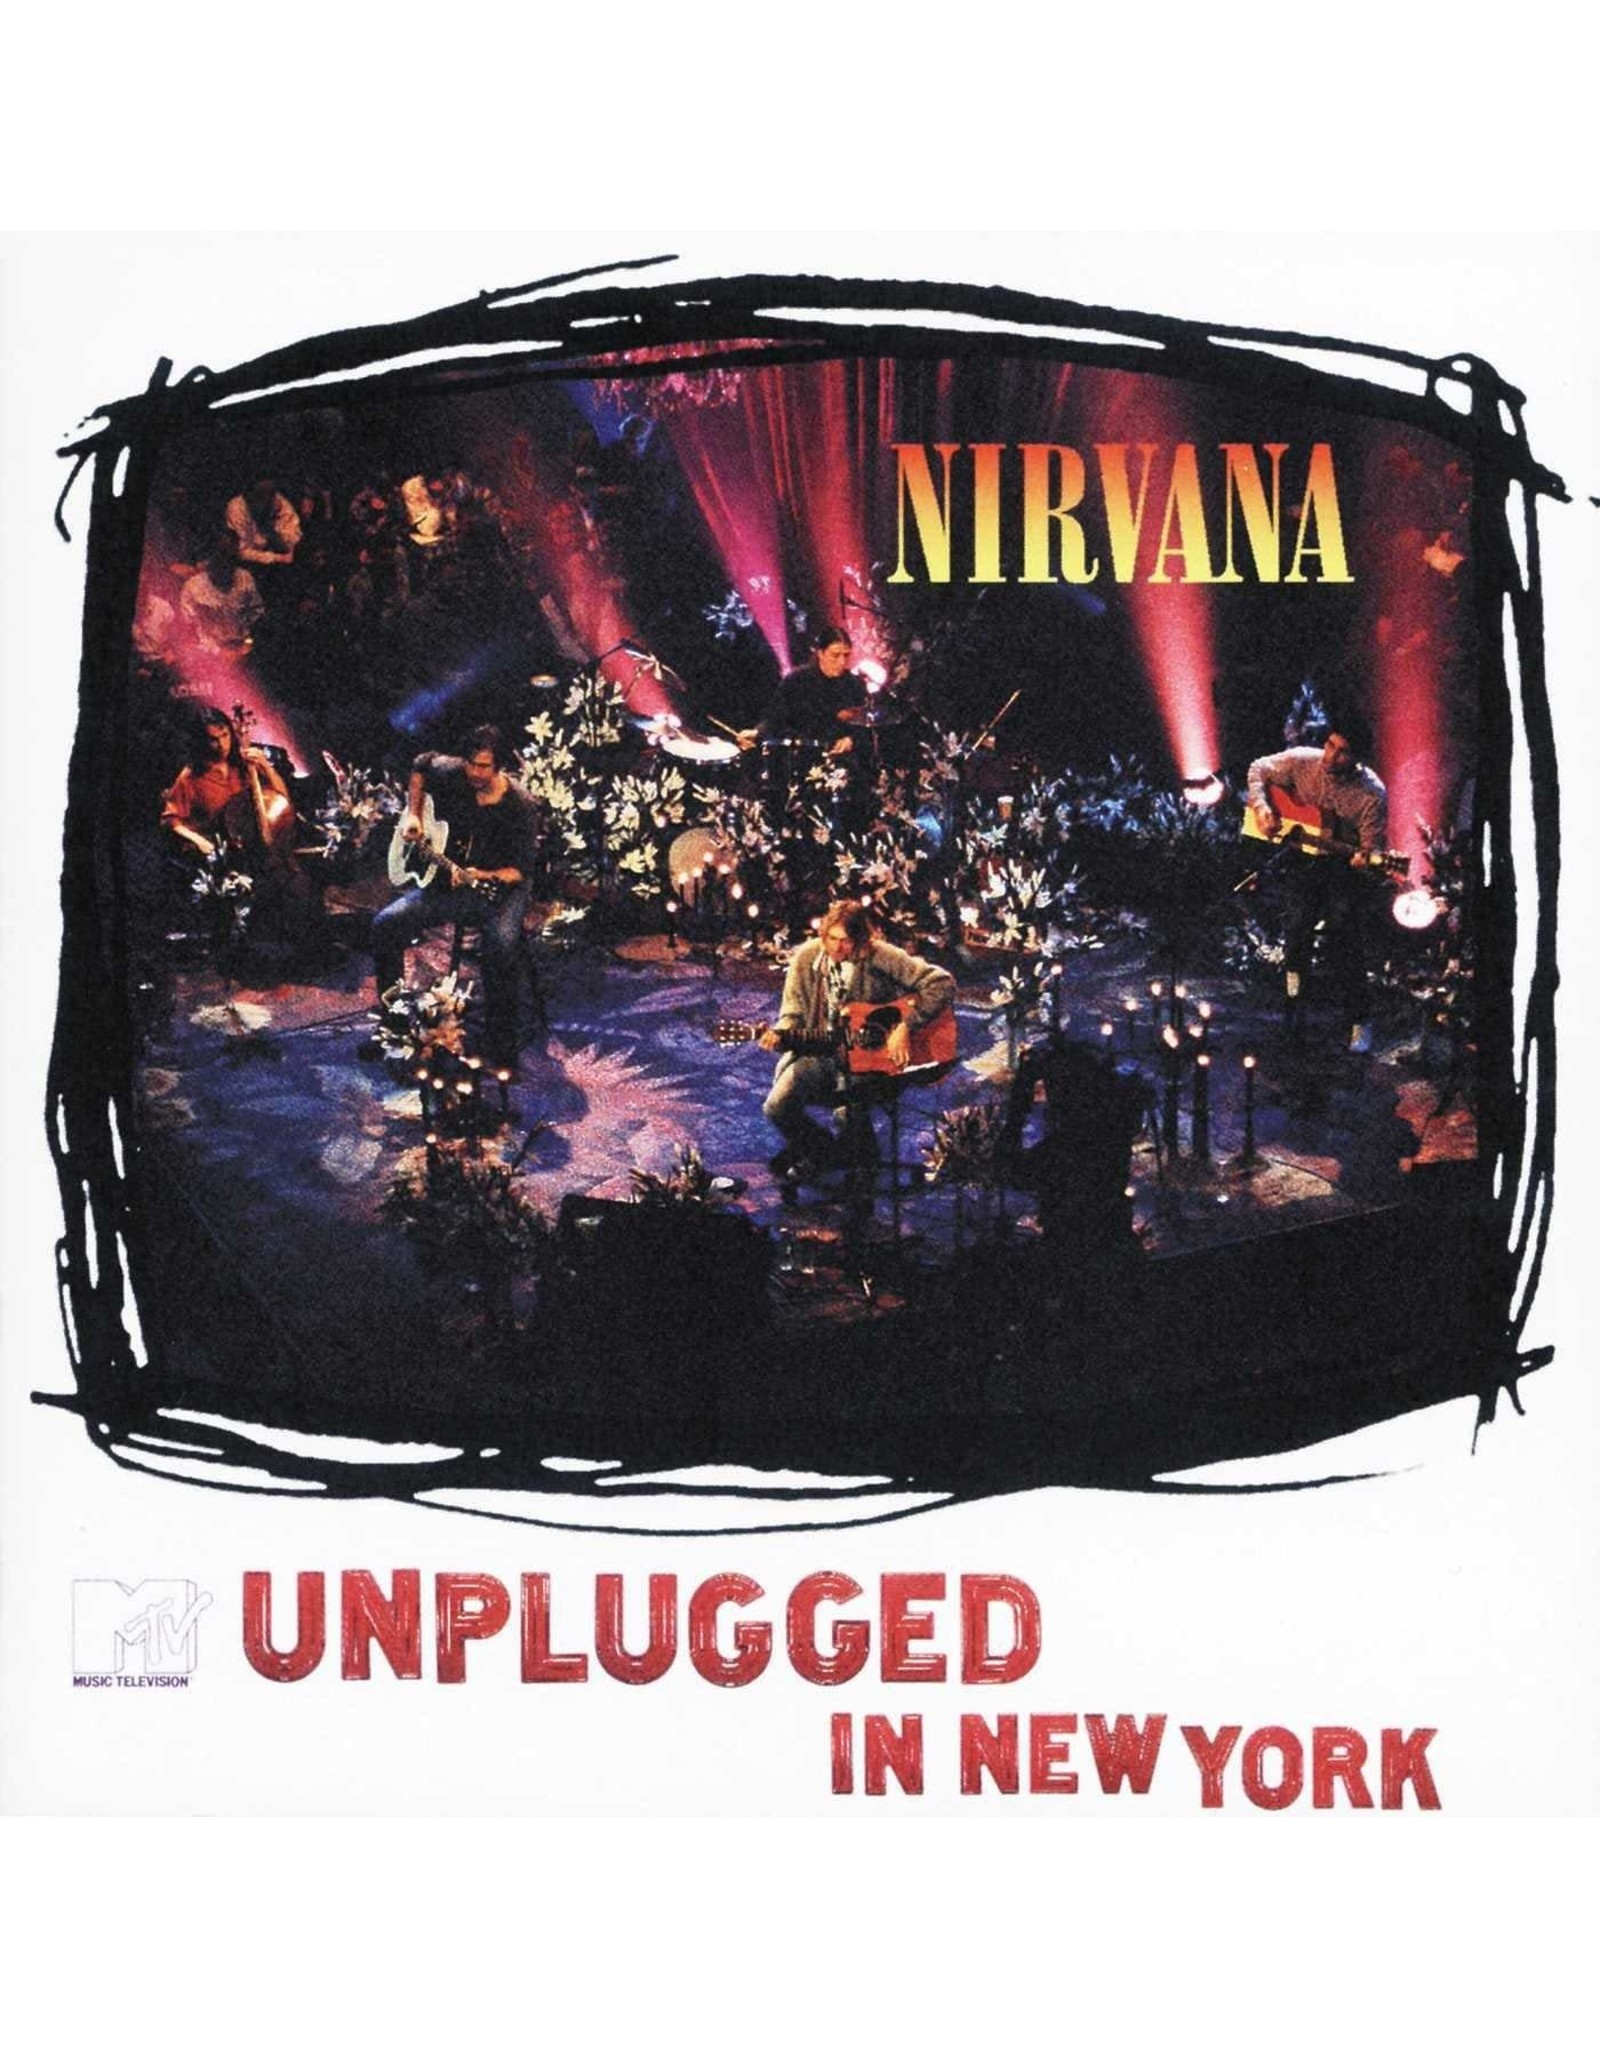 nirvana unplugged you tube